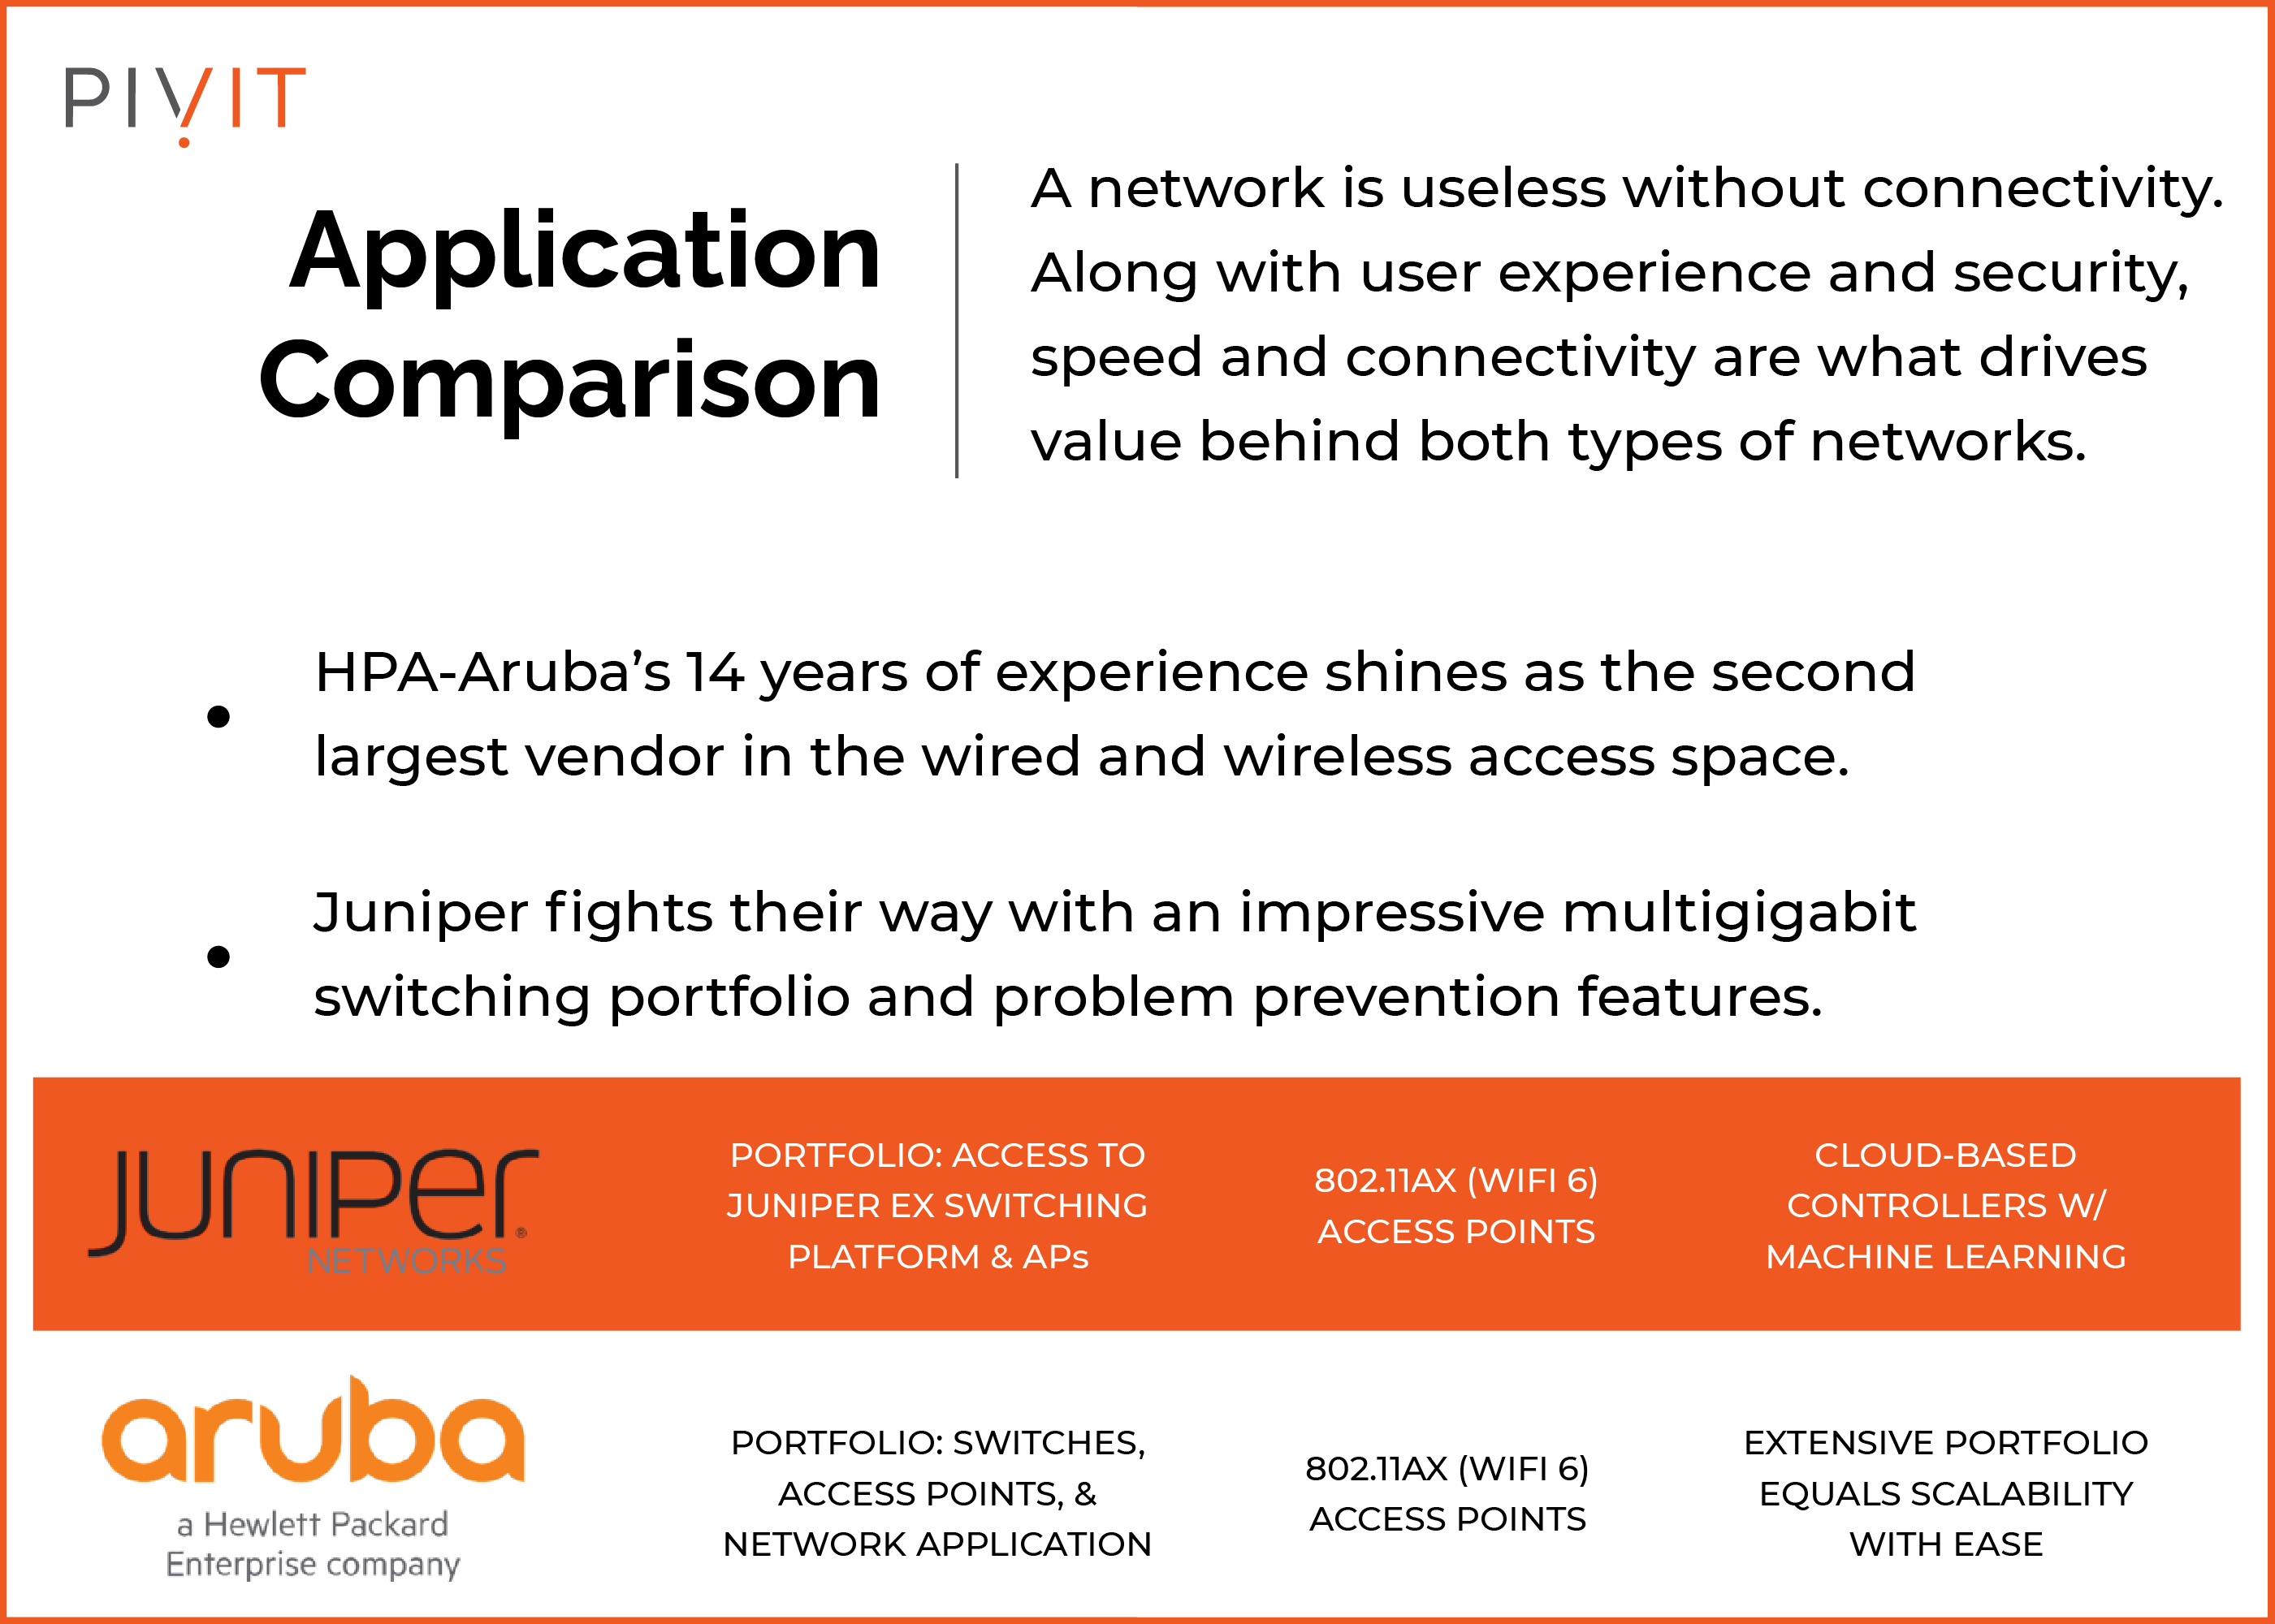 Application Comparison, Juniper vs. Aruba